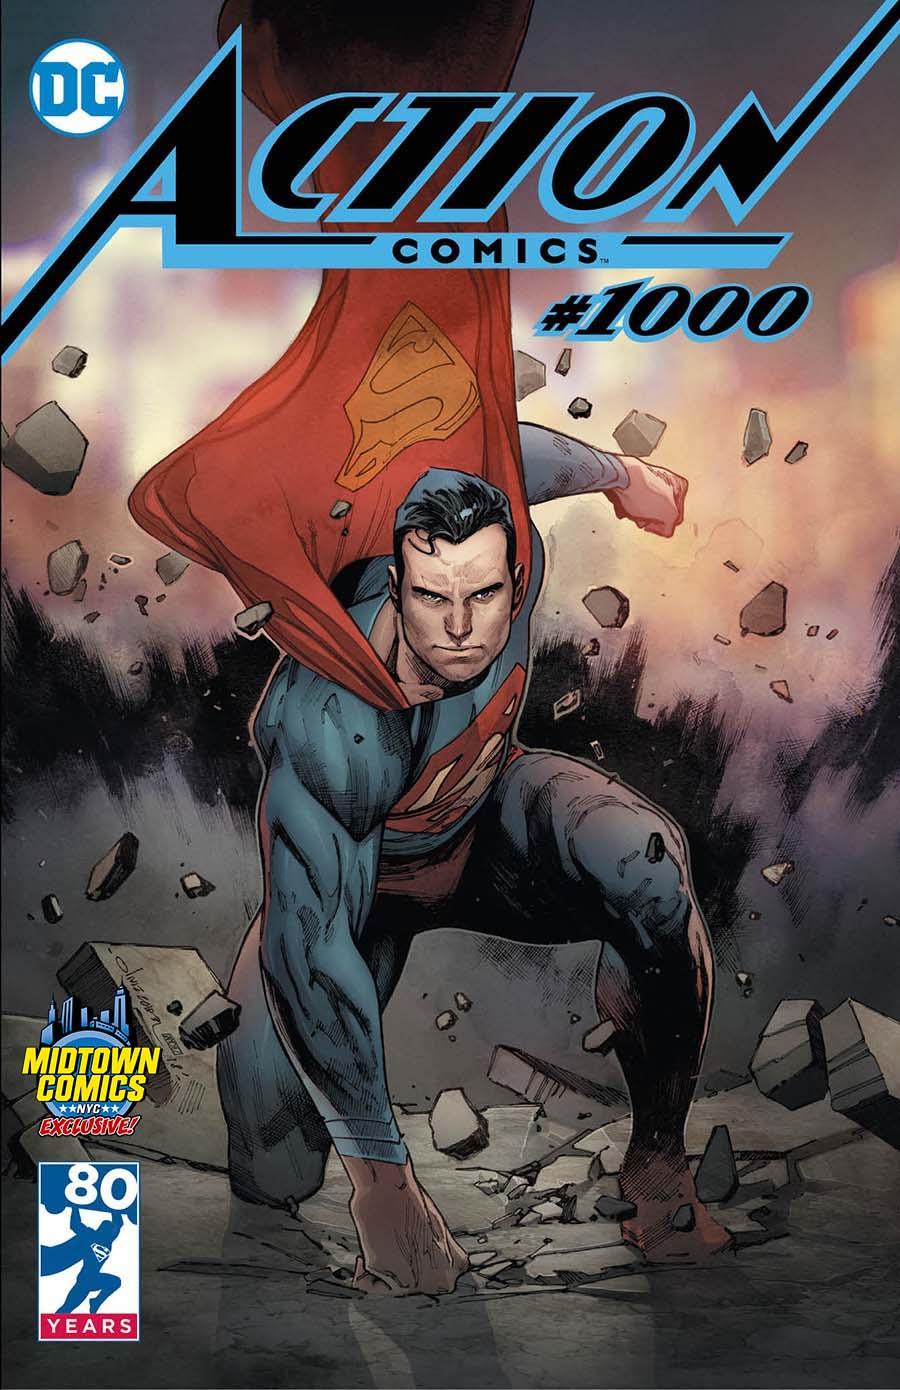 Action Comics Vol. 2 #1000